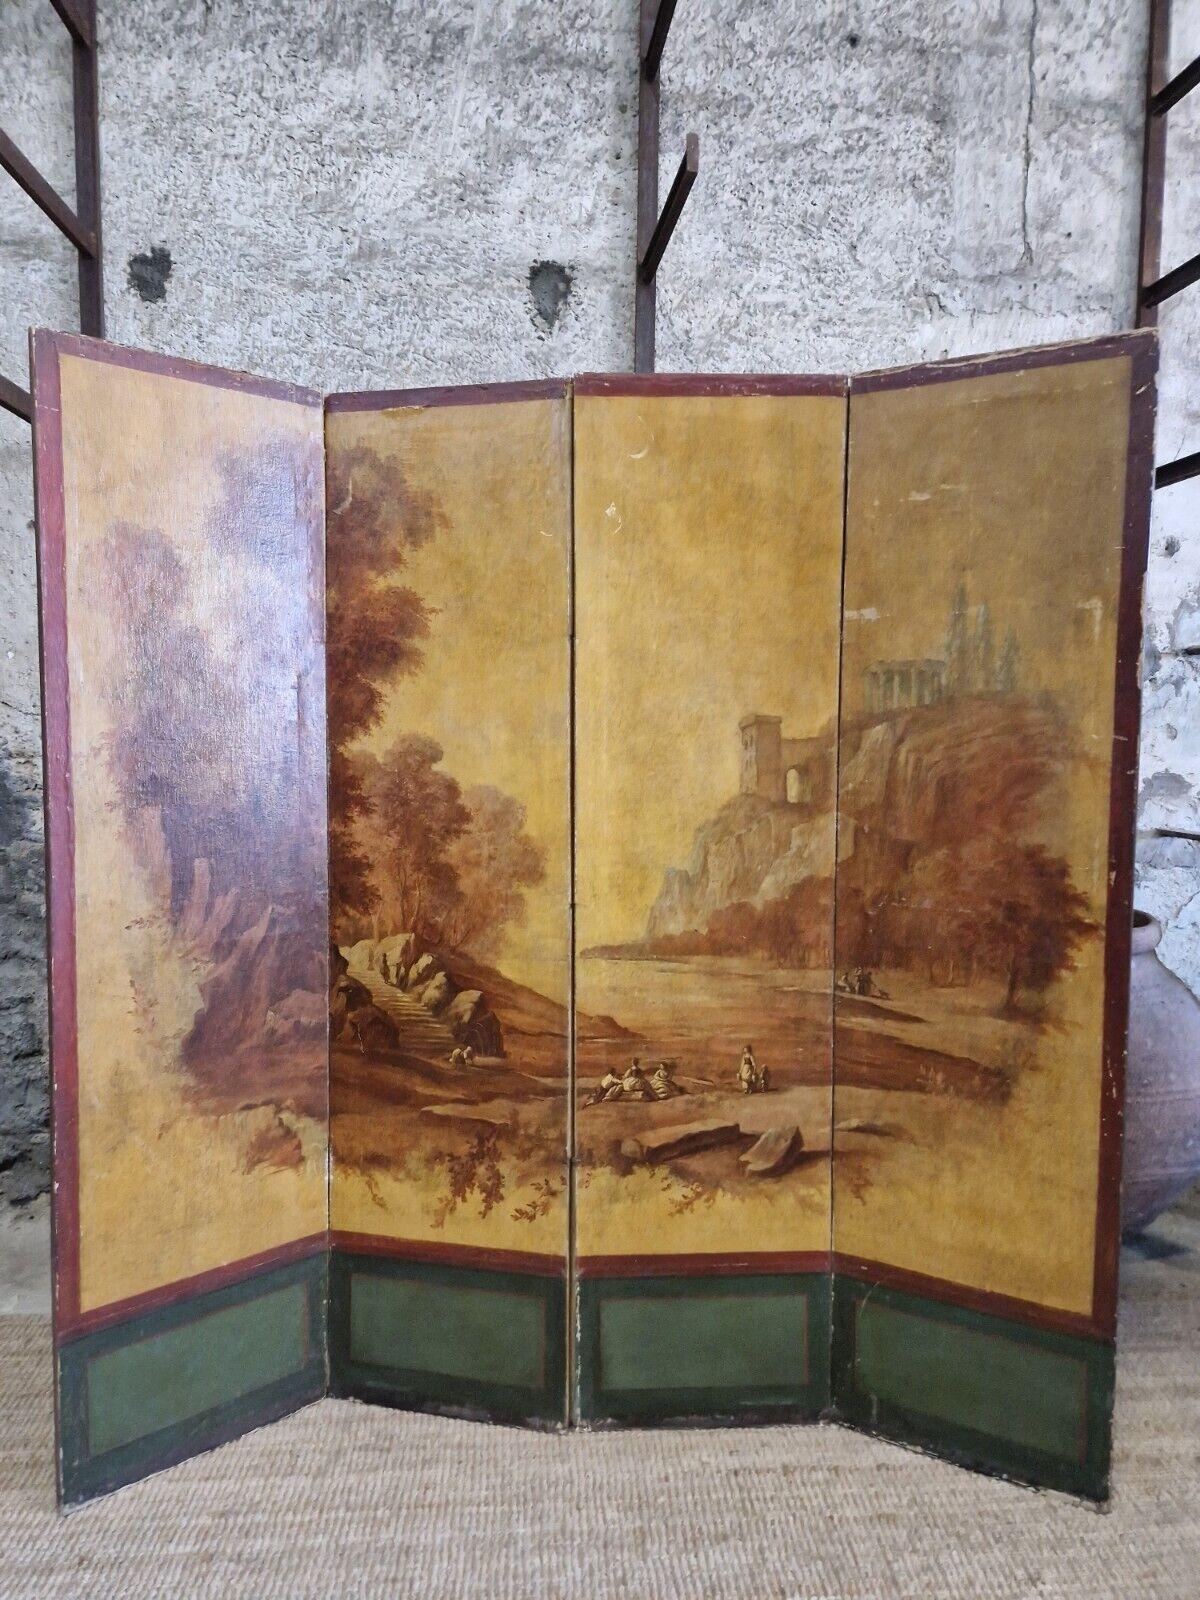 

Ce superbe écran de séparation de pièces à 4 panneaux, datant de la France du XIXe siècle, fera sensation dans n'importe quelle pièce. Fabriqué à la main avec le souci du détail, ce paravent sur pied présente un magnifique thème paysager peint à